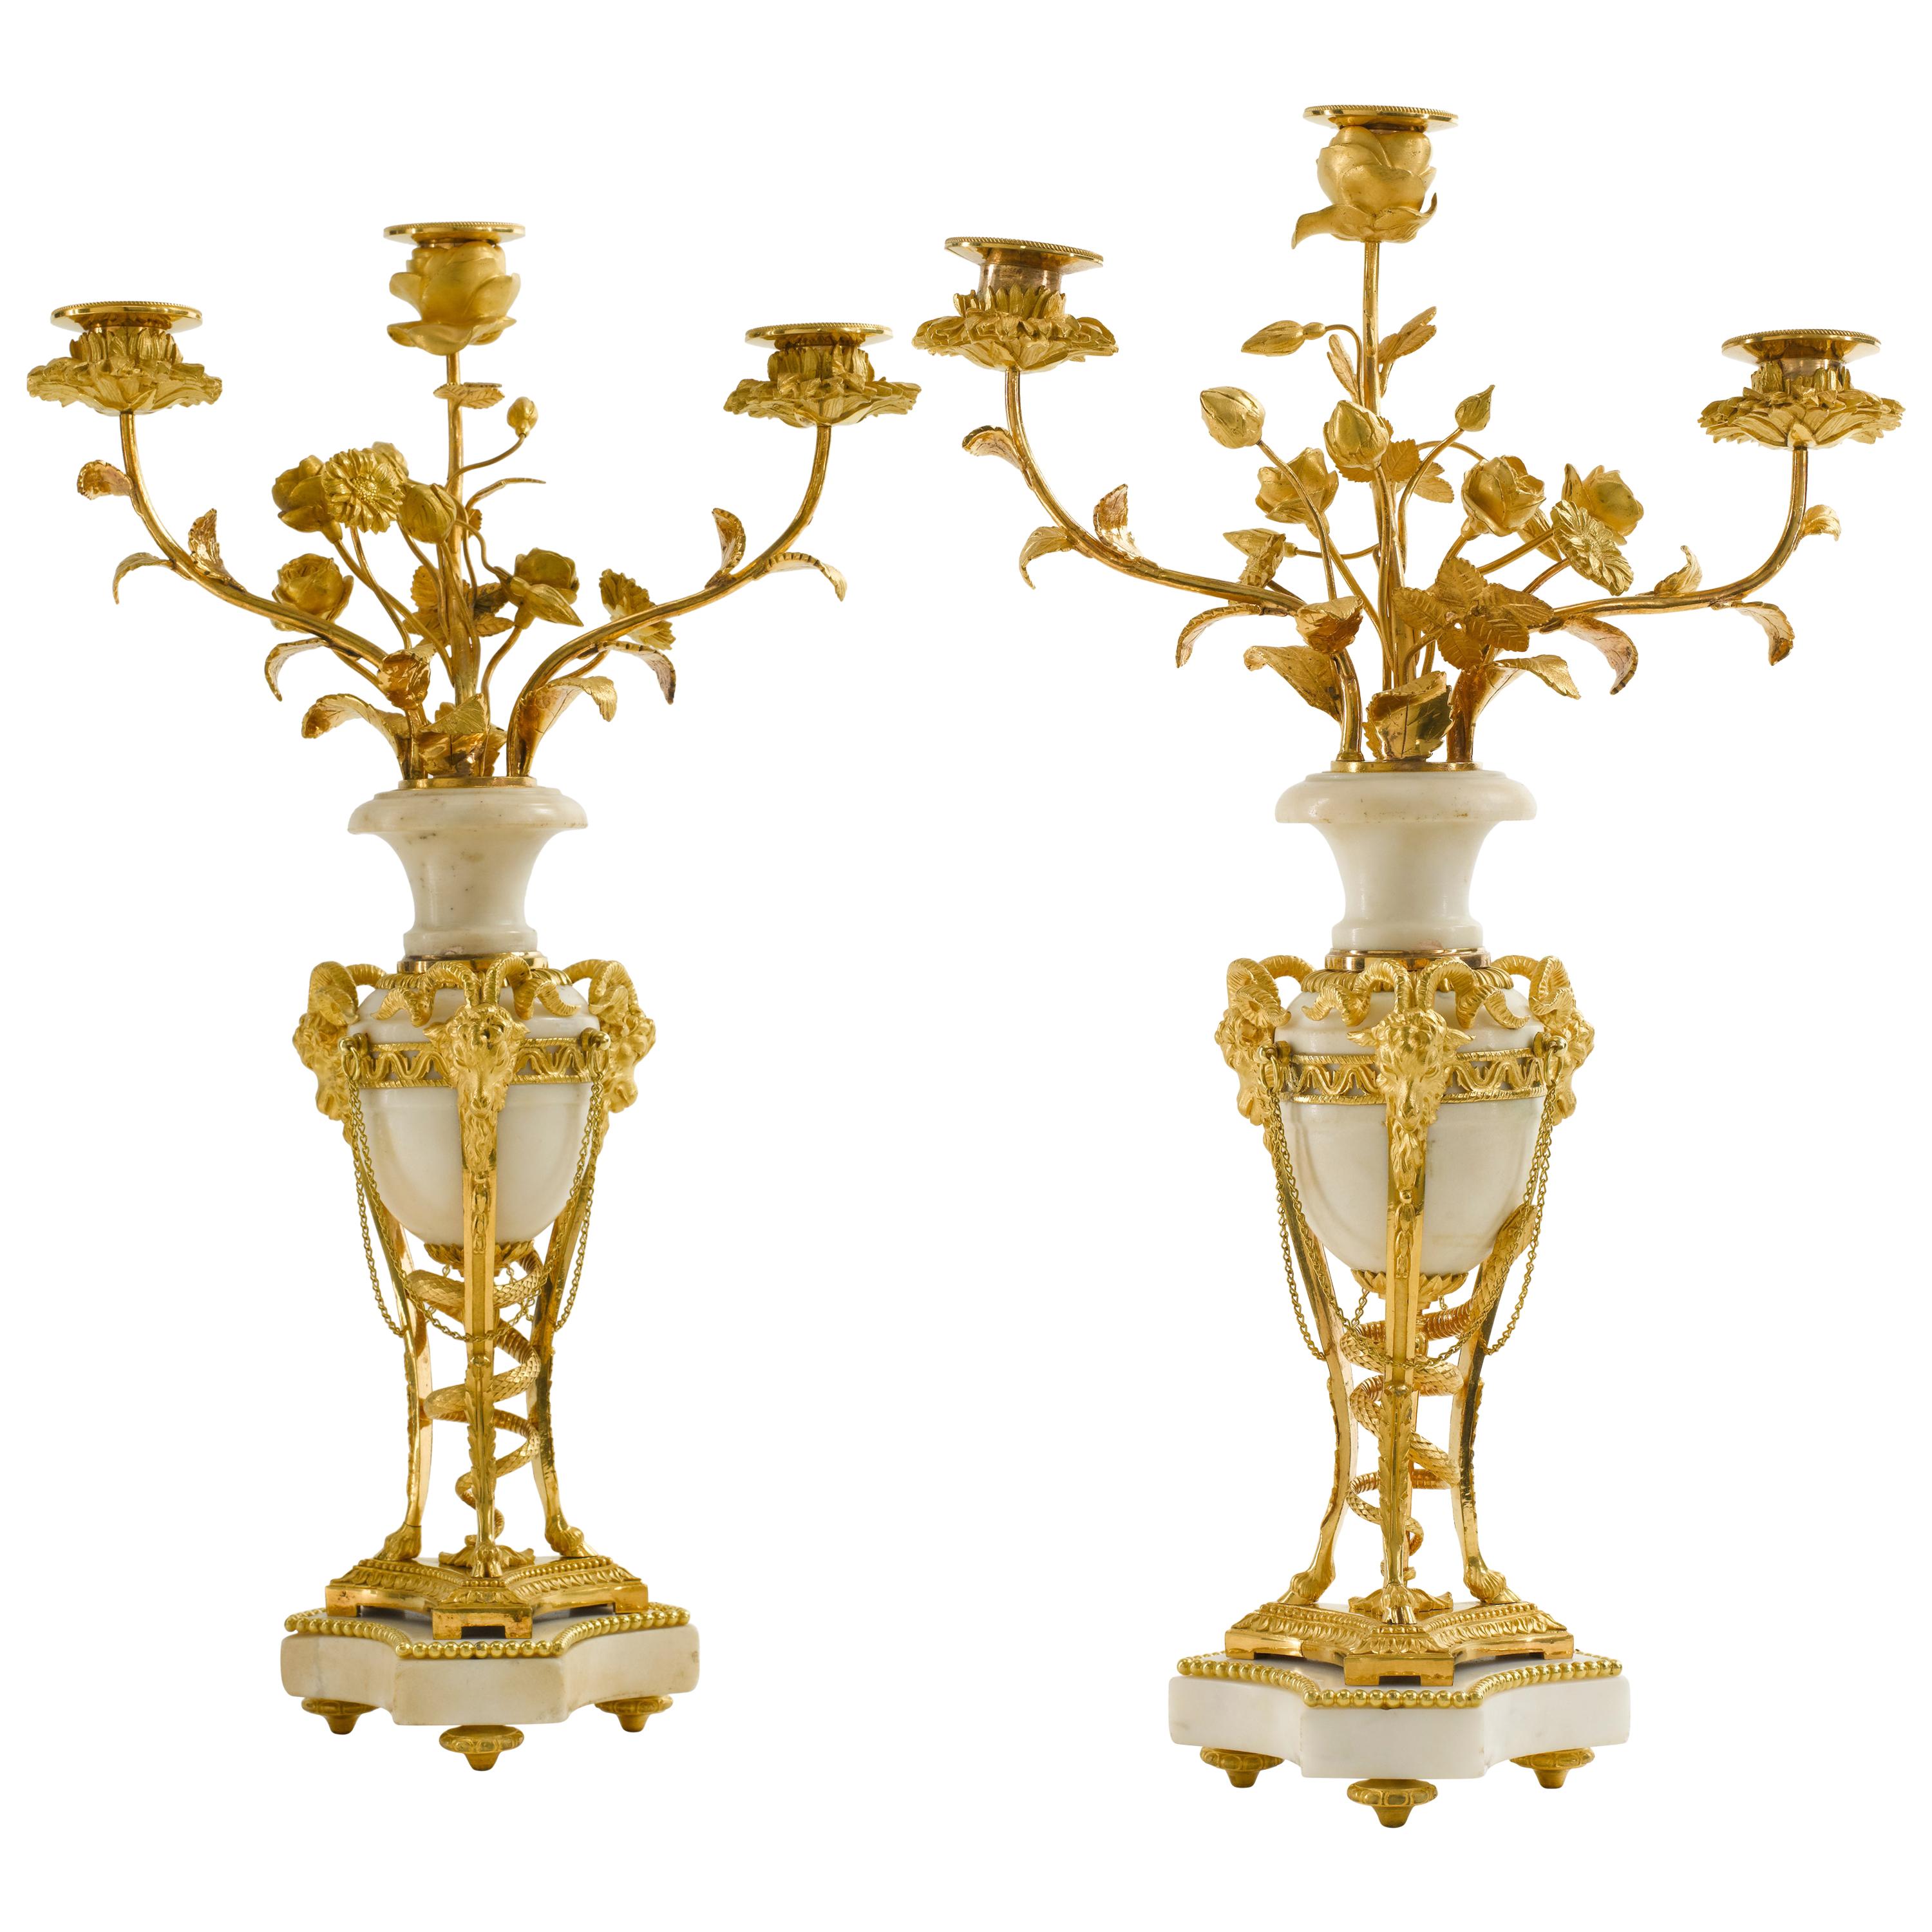 Paire de chandeliers Louis XVI en bronze doré et marbre blanc de la fin du XVIIIe siècle